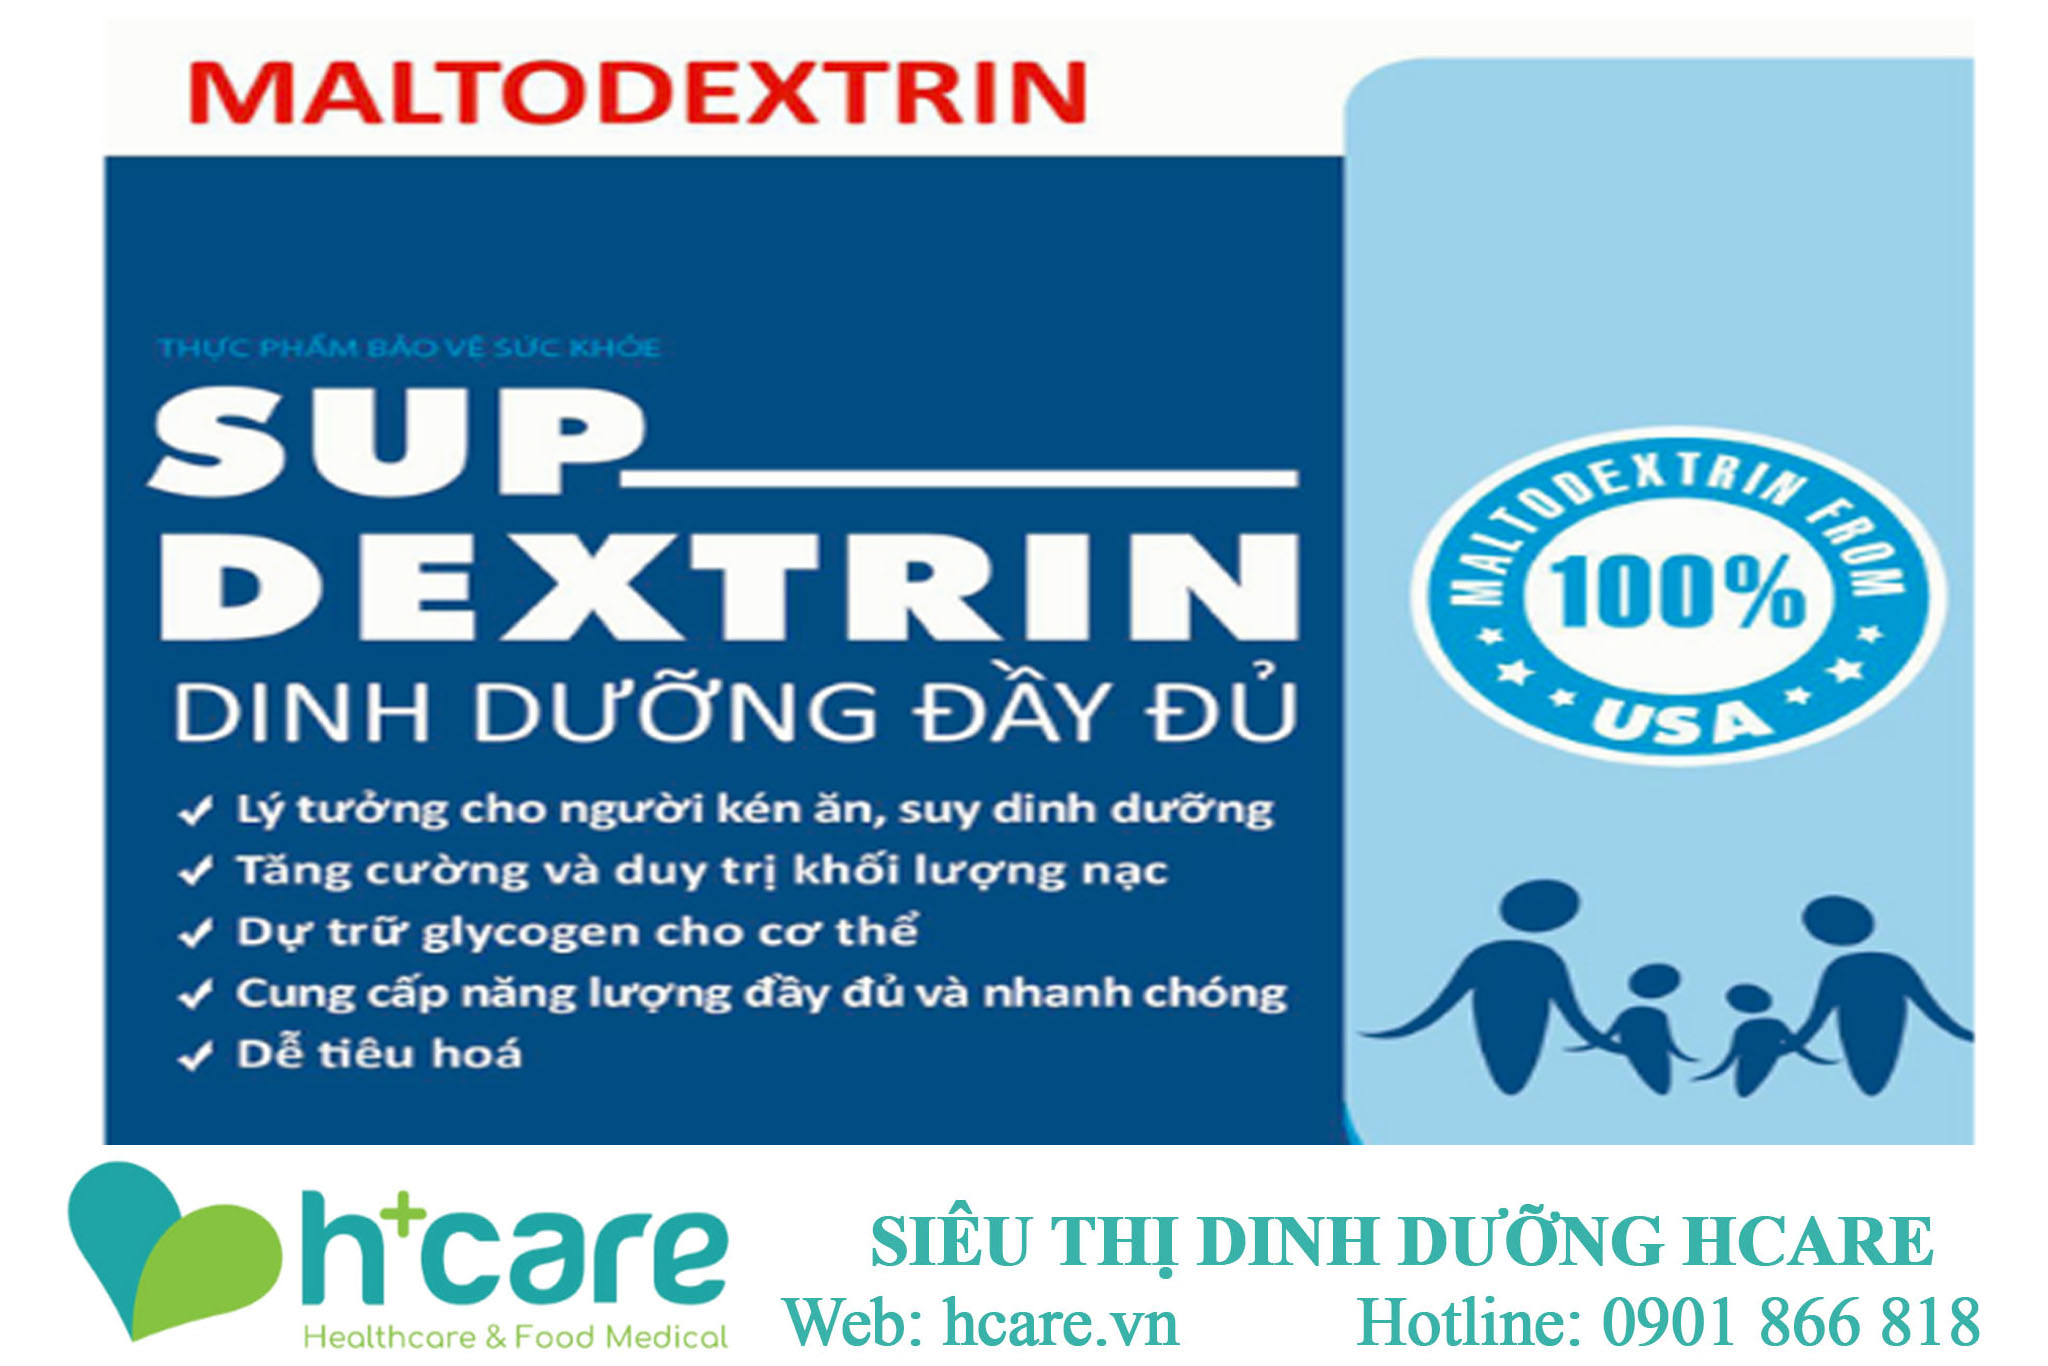 Công dụng nổi bật của Sup dextrin nutri miền nam